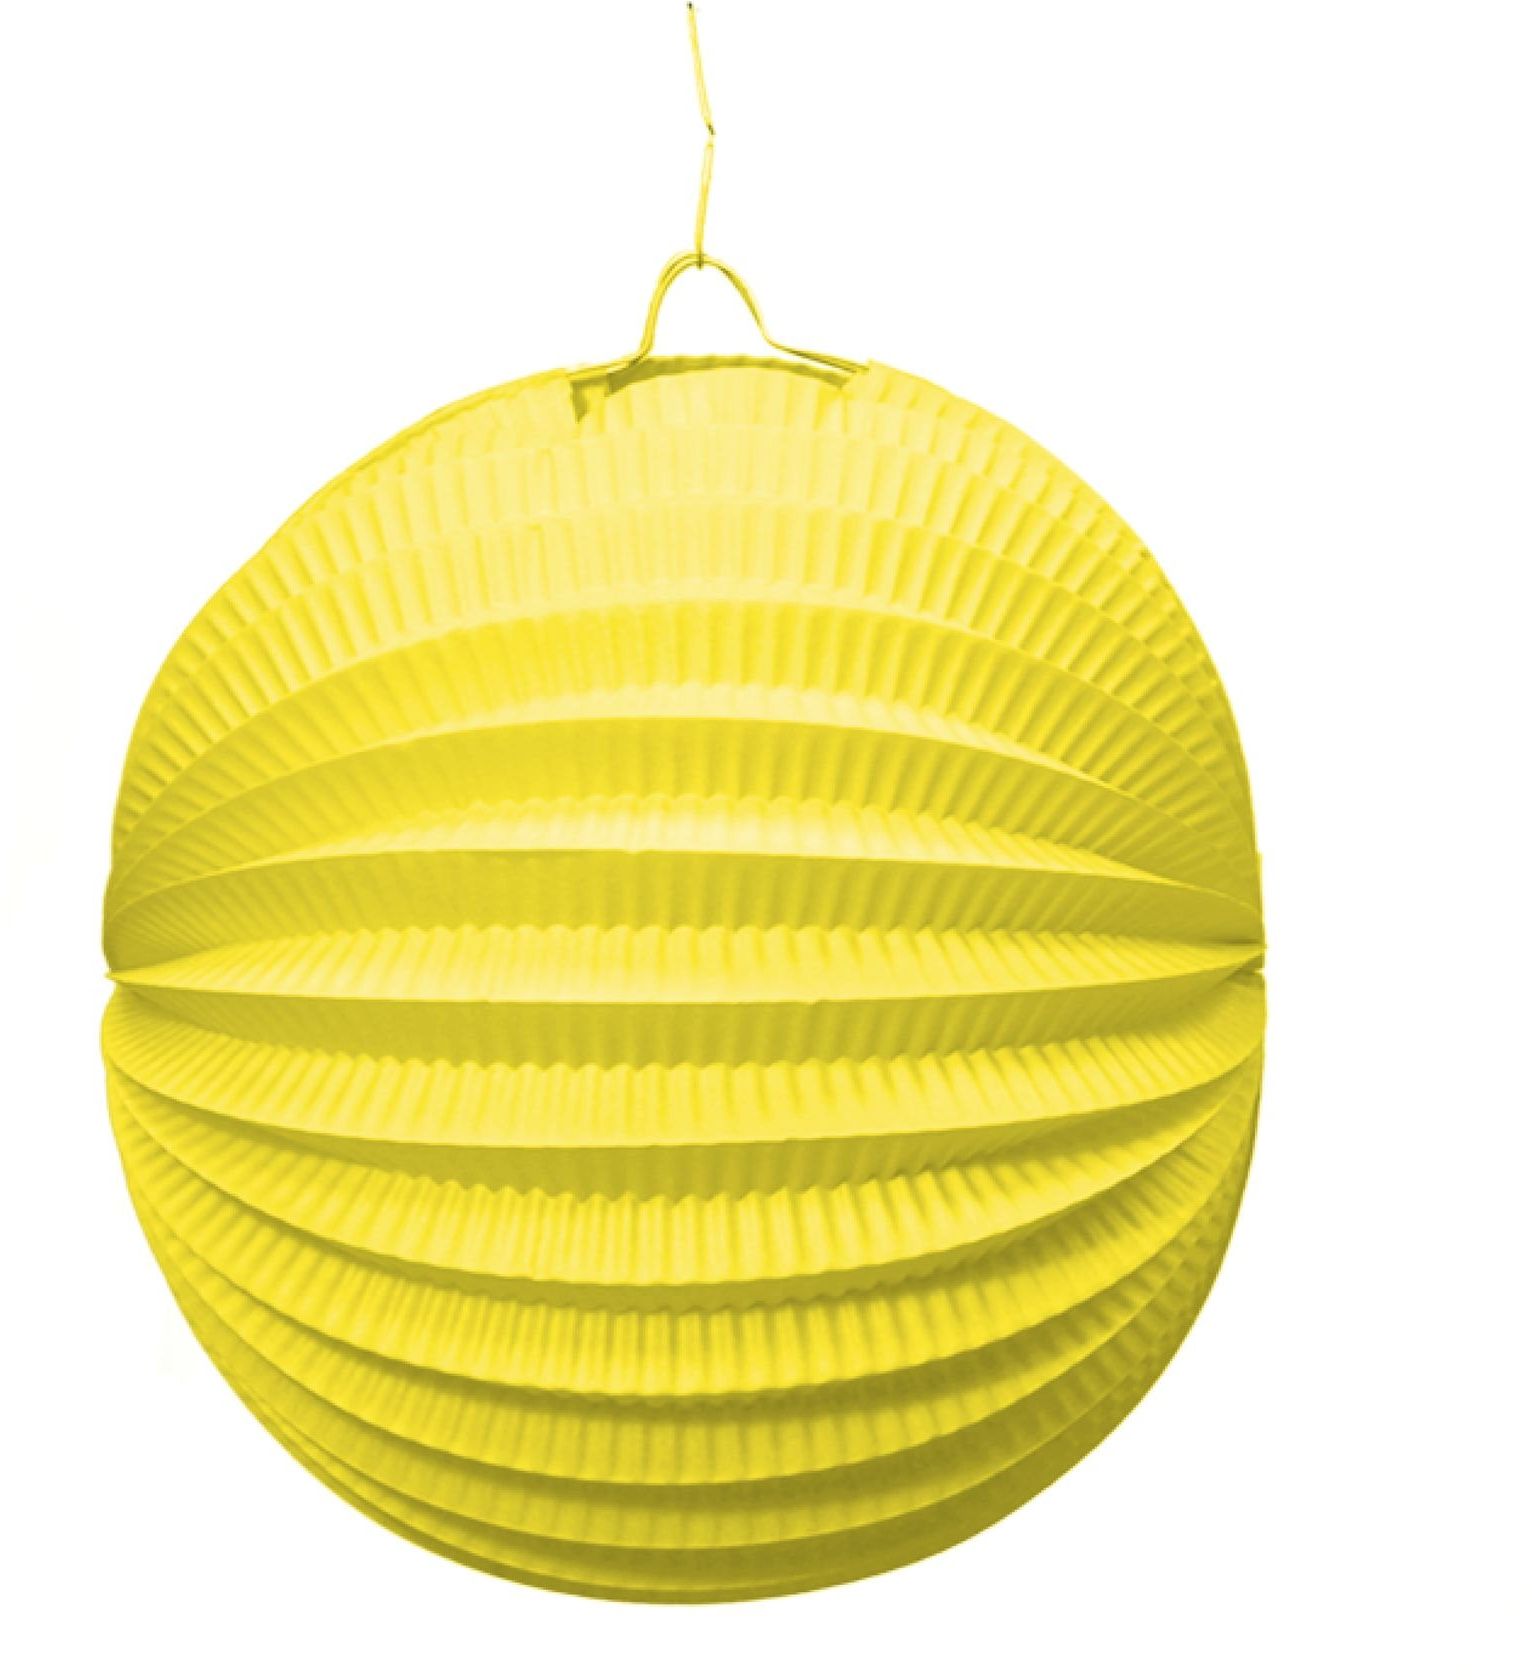 Lampion decoratie geel